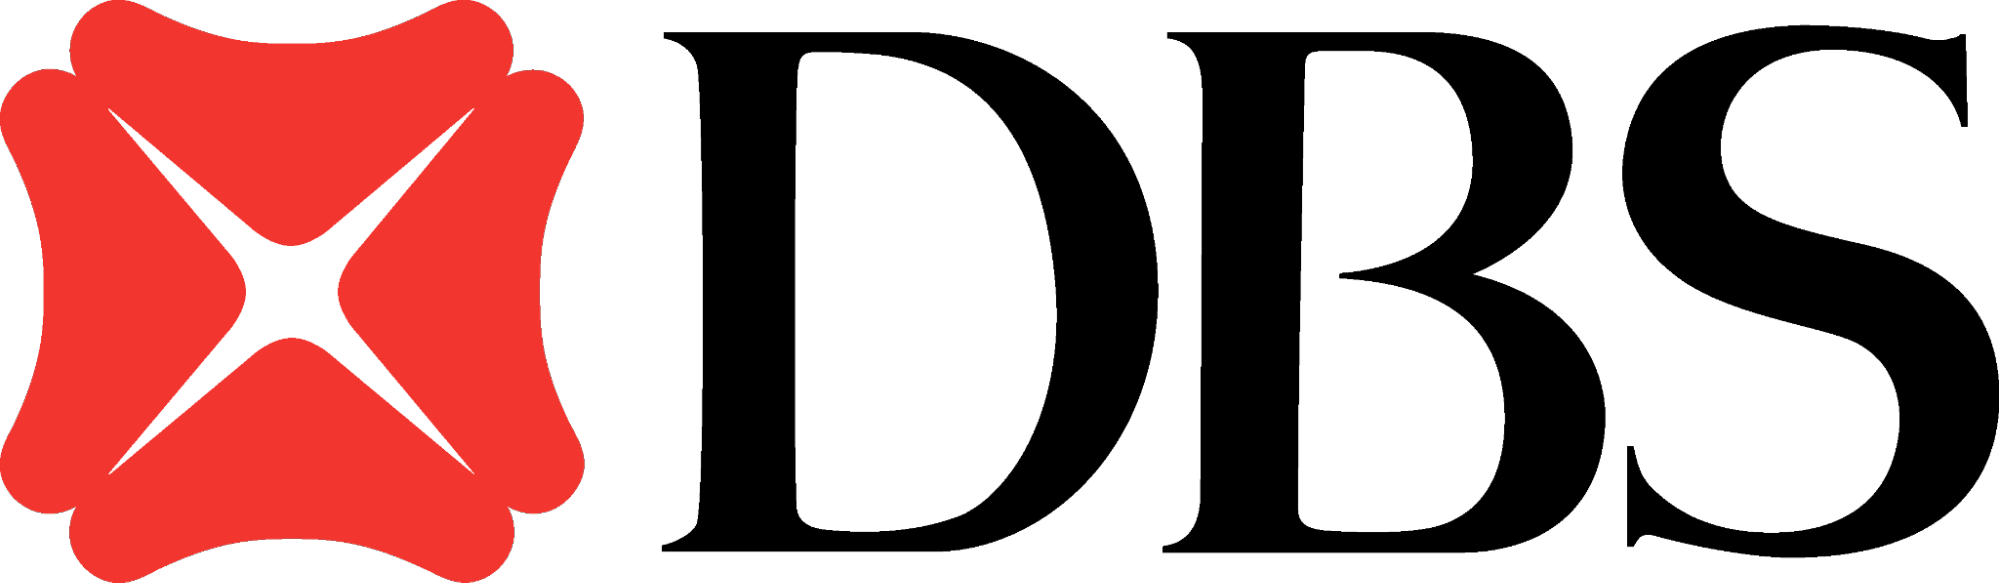 4finance logo